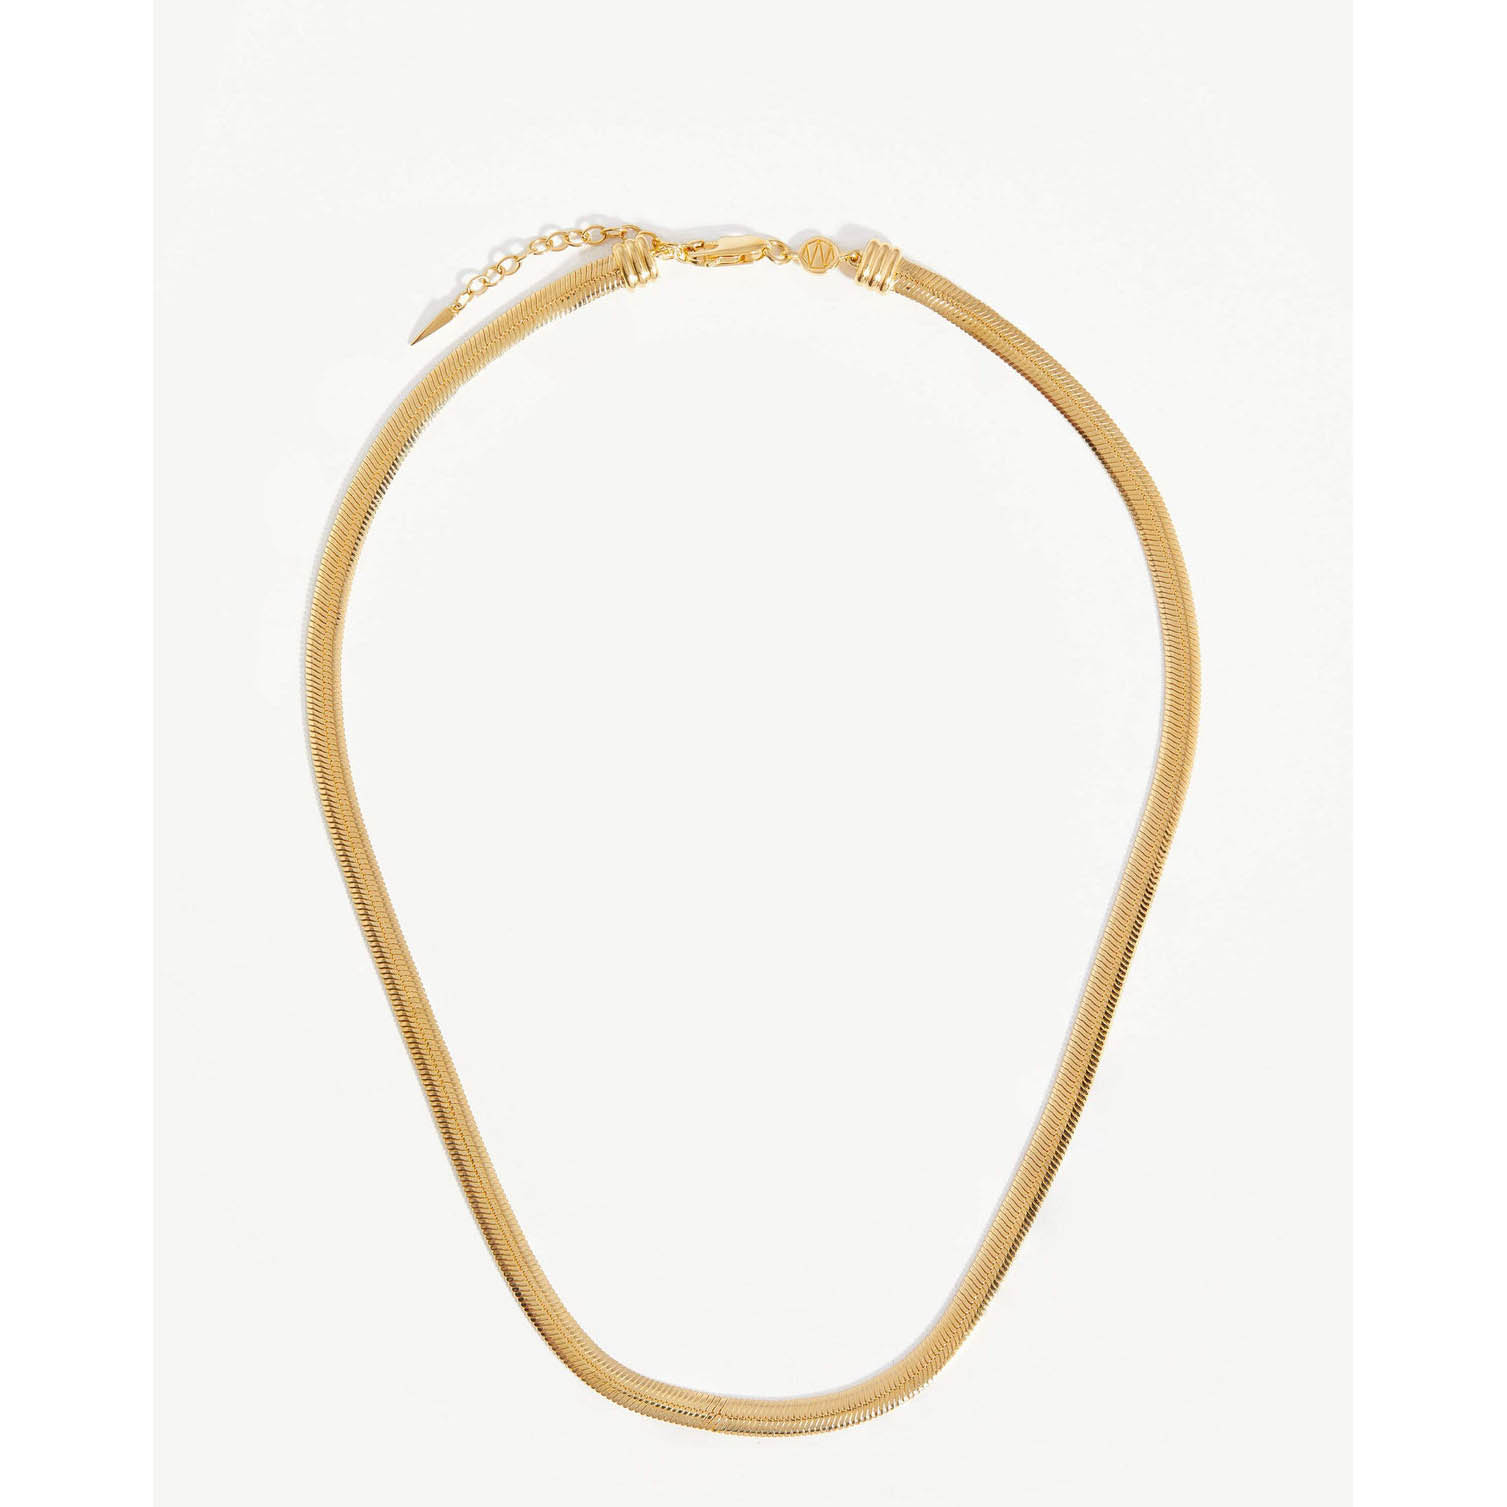 Großhändler für Gold-Vermeil-Ketten, maßgeschneiderte flache Schlangenketten-Halskette, 18 Karat vergoldetes Vermeil